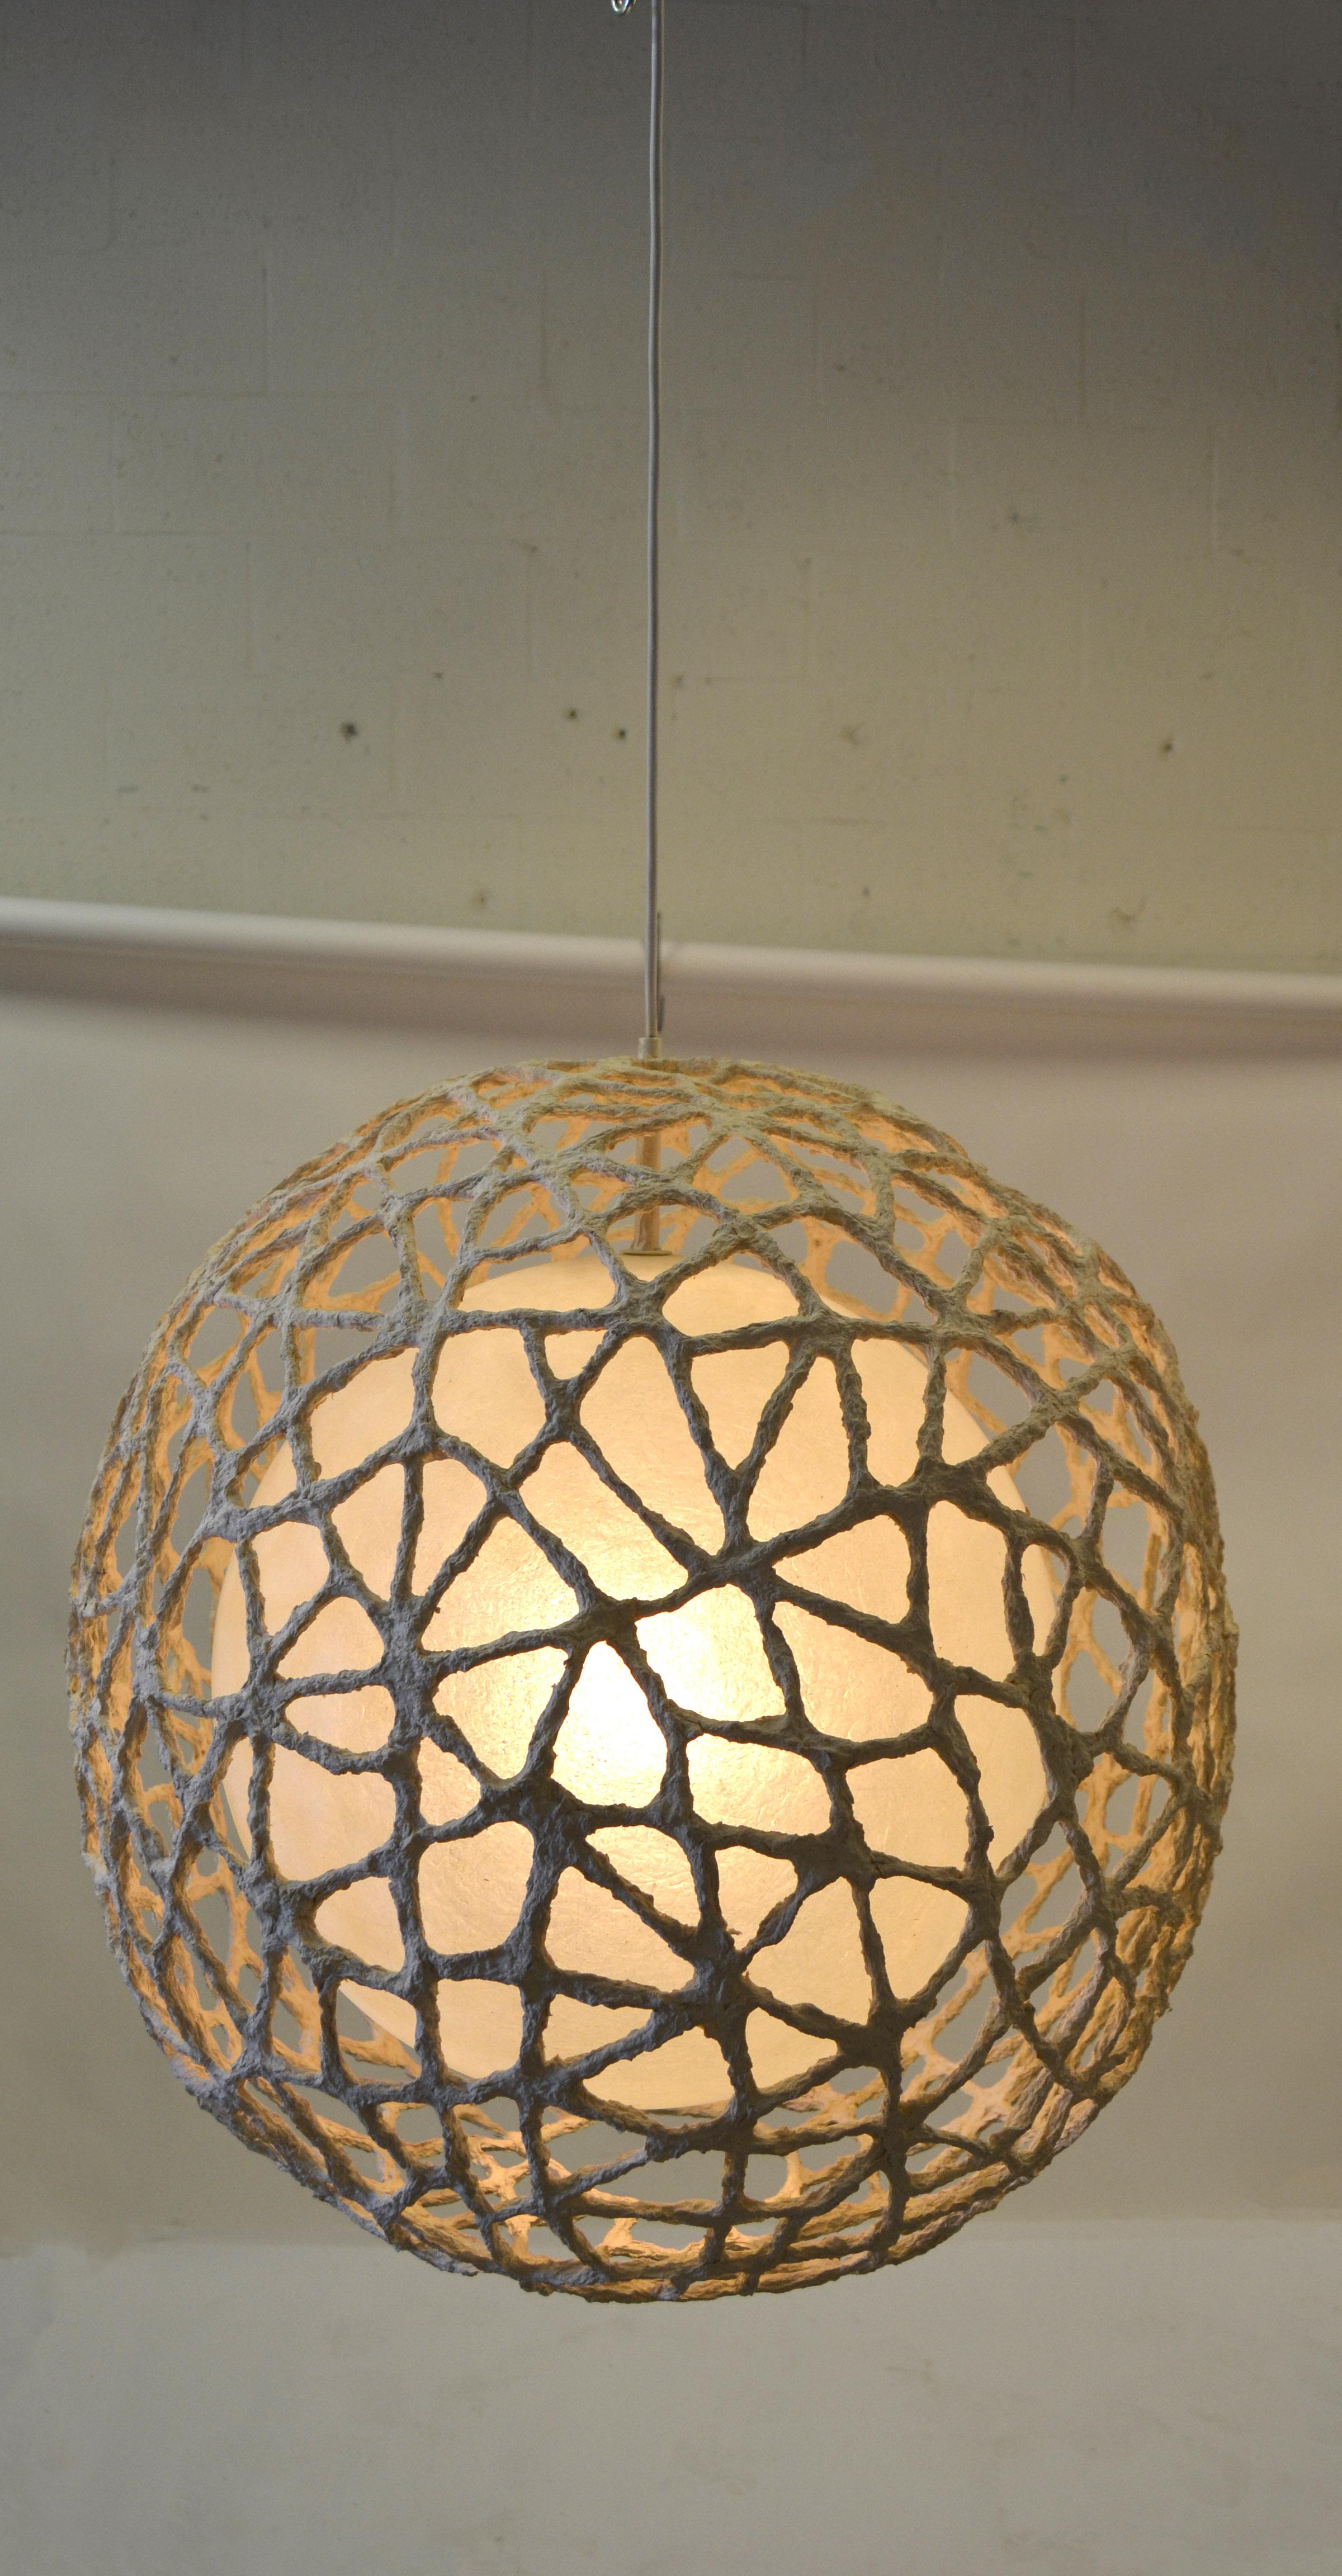 1980 Space Age Tan Fiberglass Paper Mache Spheres Pendant Lamp Light Fixture For Sale 6